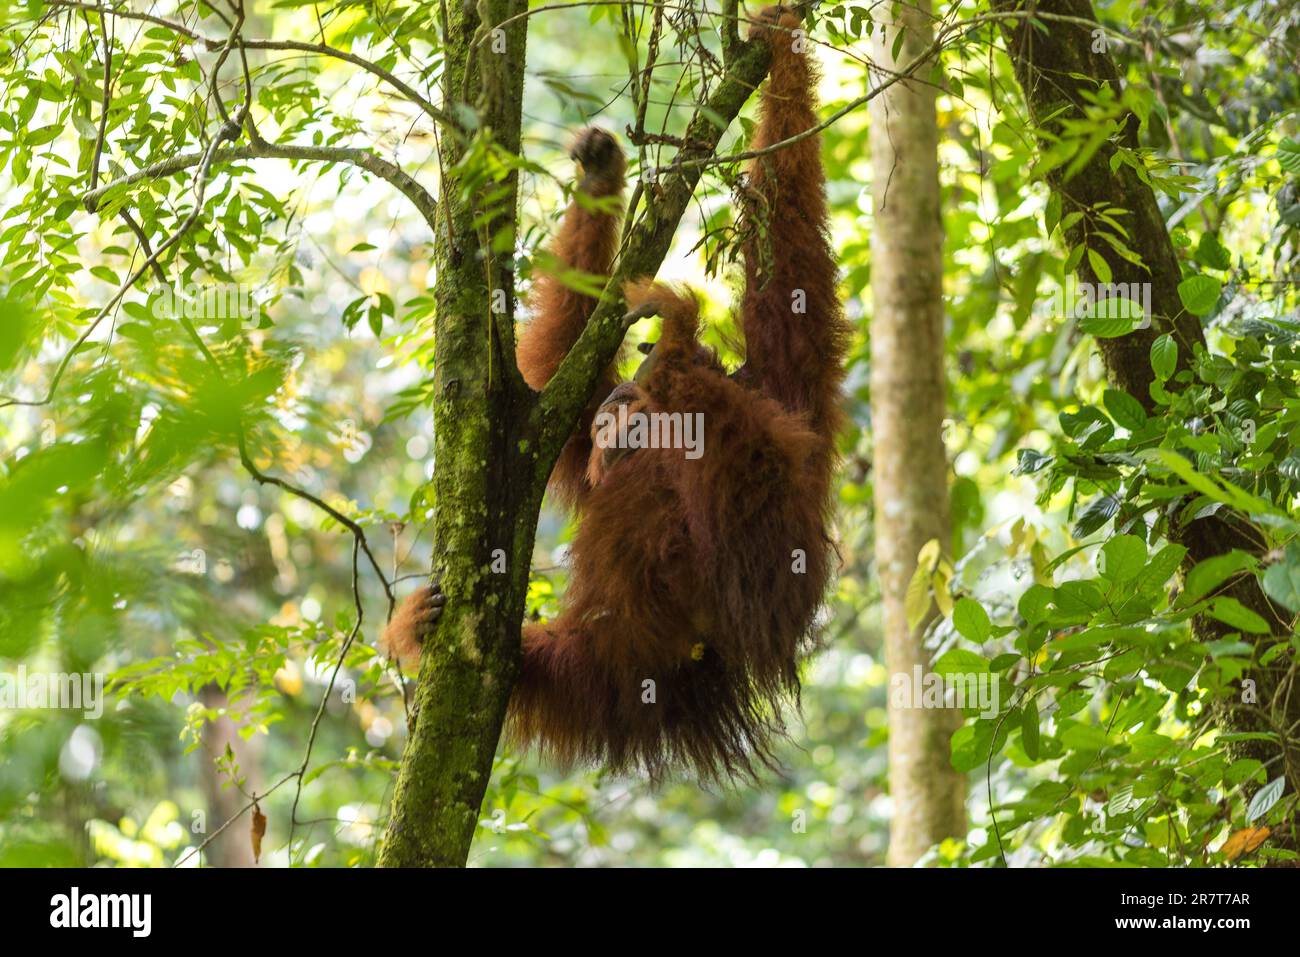 Gratuit, sauvage, mâle Sumatran orangutan dans le parc national de Gunung Leuser sur l'île indonésienne de Sumatra. Près du village de Ketambe, ces merveilleux Banque D'Images